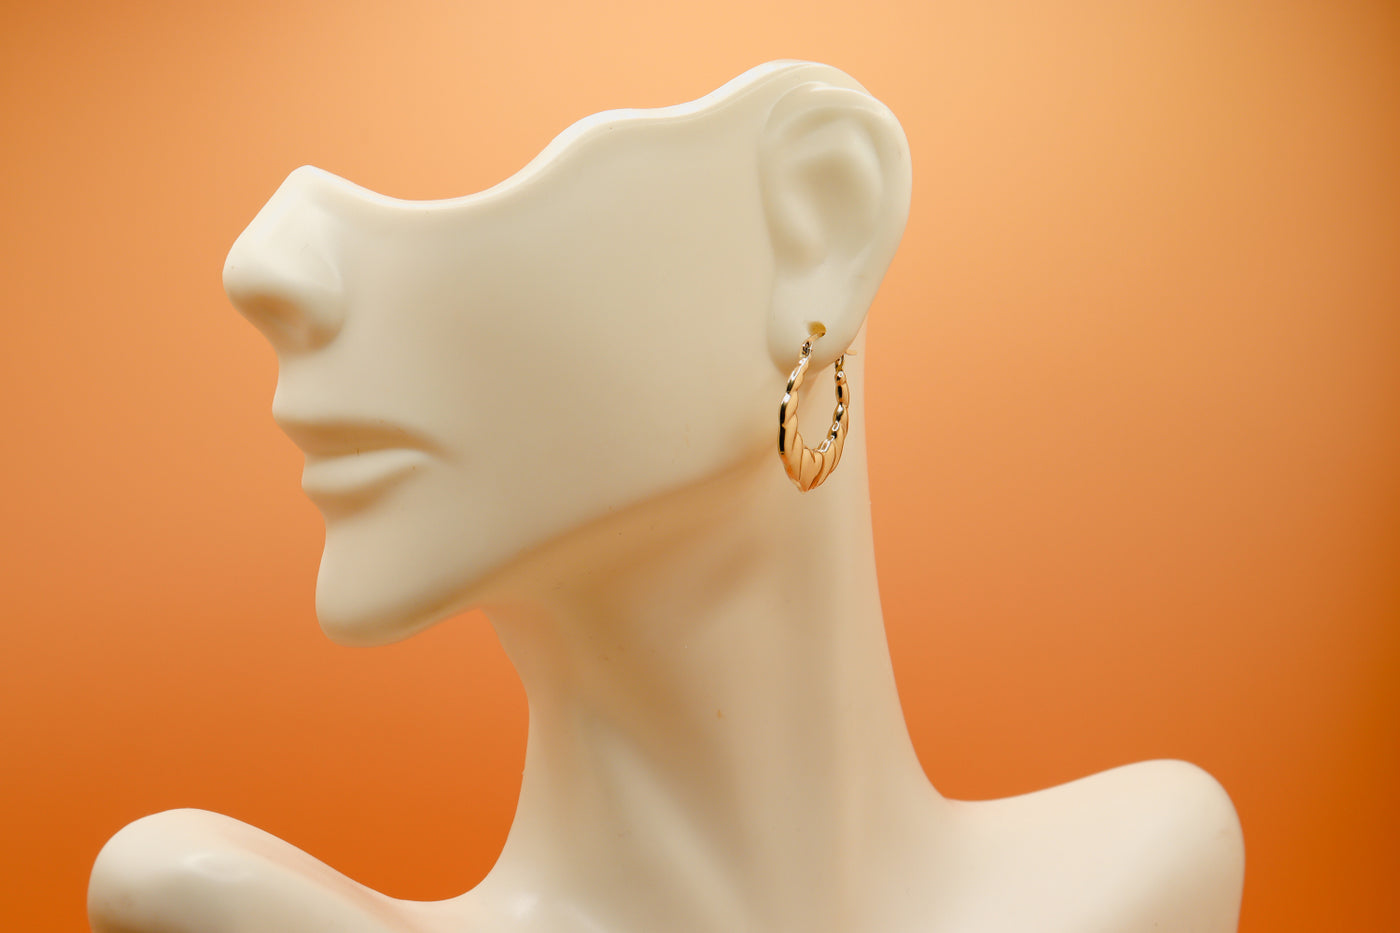 10K Gold Oval Heart Hoop Earrings